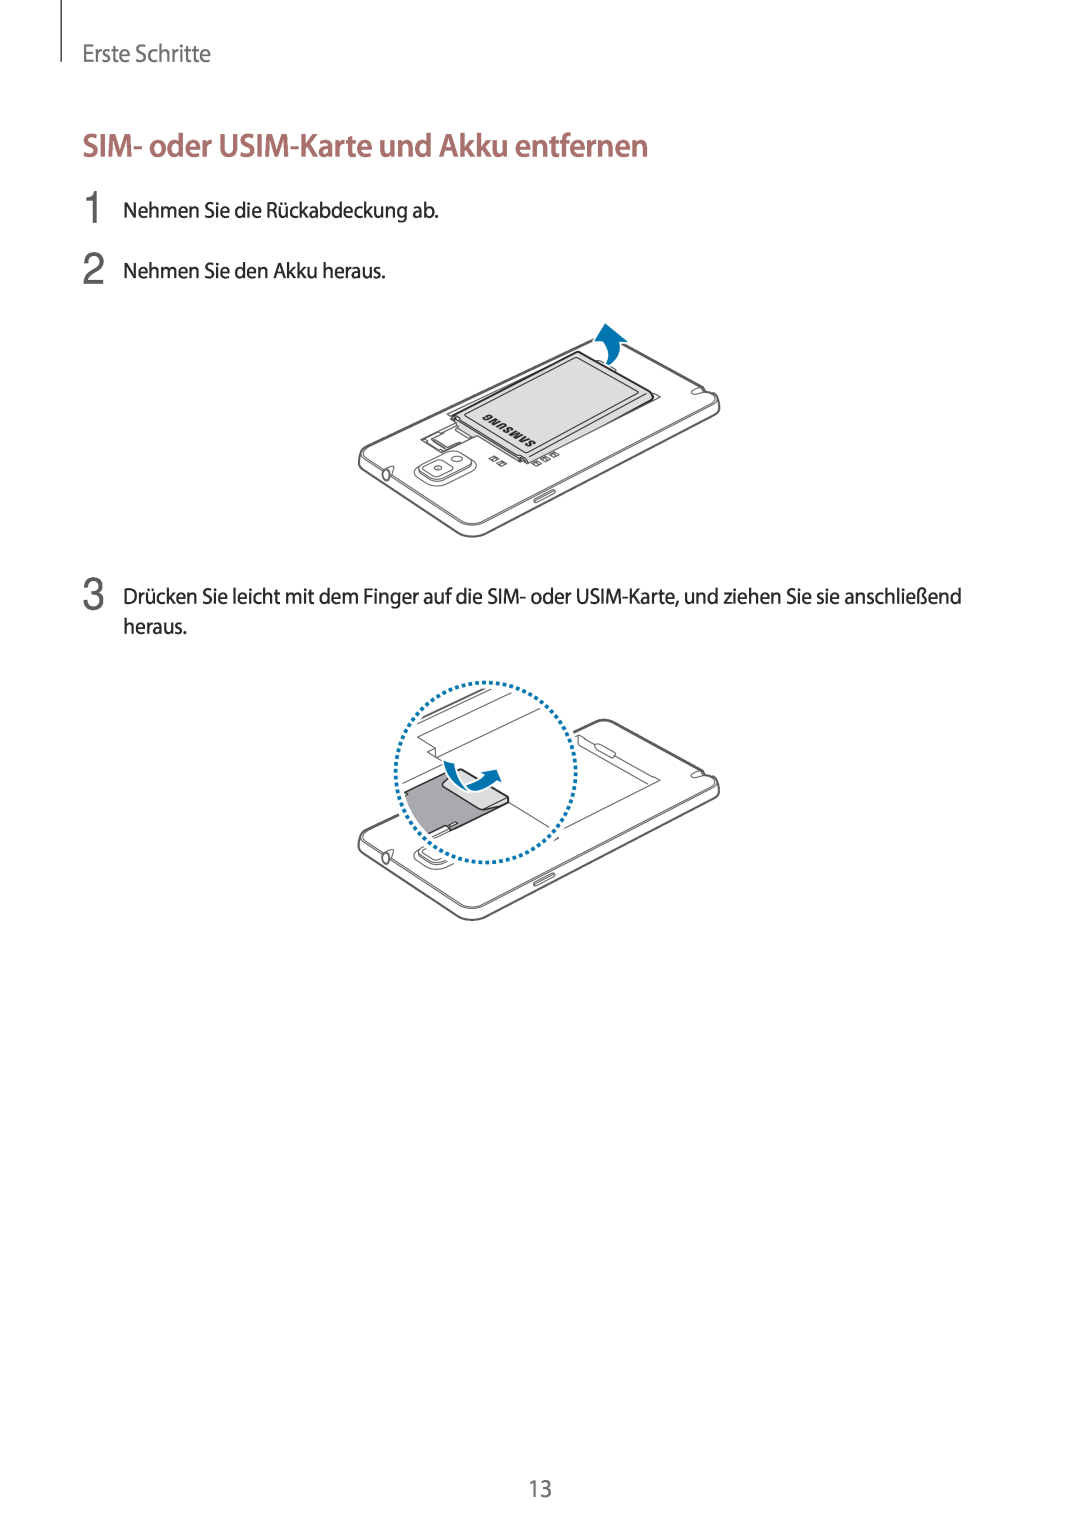 Samsung SM-N9005ZKEMEO, SM-N9005ZKEXEO, SM-N9005ZWEVD2 manual SIM- oder USIM-Karte und Akku entfernen, Erste Schritte 